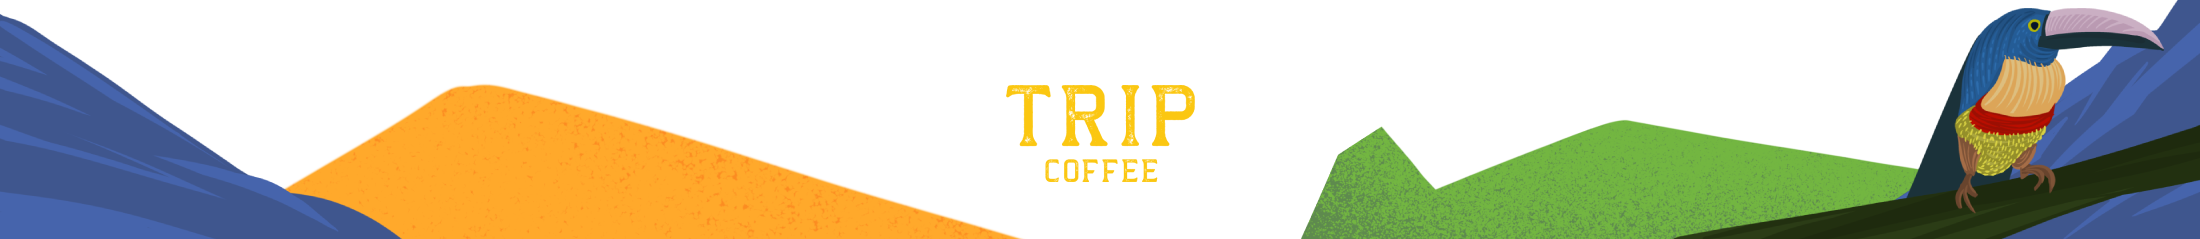 Logo Trip